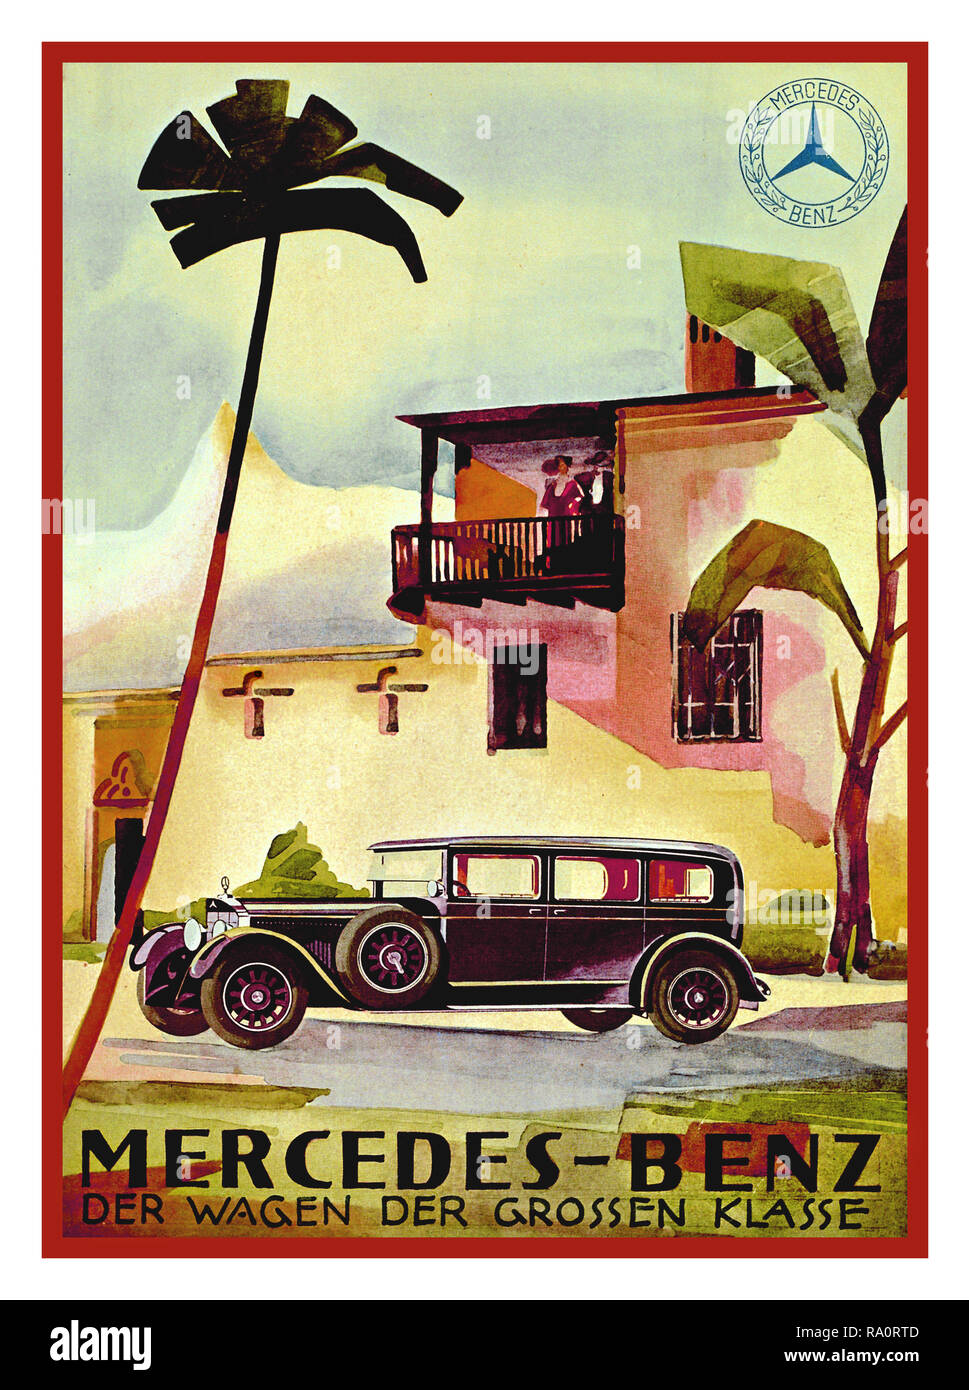 1920 Mercedes-Benz Vintage Tipo auto W 08 400/460 Nürberg Automobile annunci stampa: "La vettura in una classe di propria" dall'Oriente a Palm-Tree impostazioni - touring lontane terre erano un popolare motivo di pubblicità nel 1928. Foto Stock